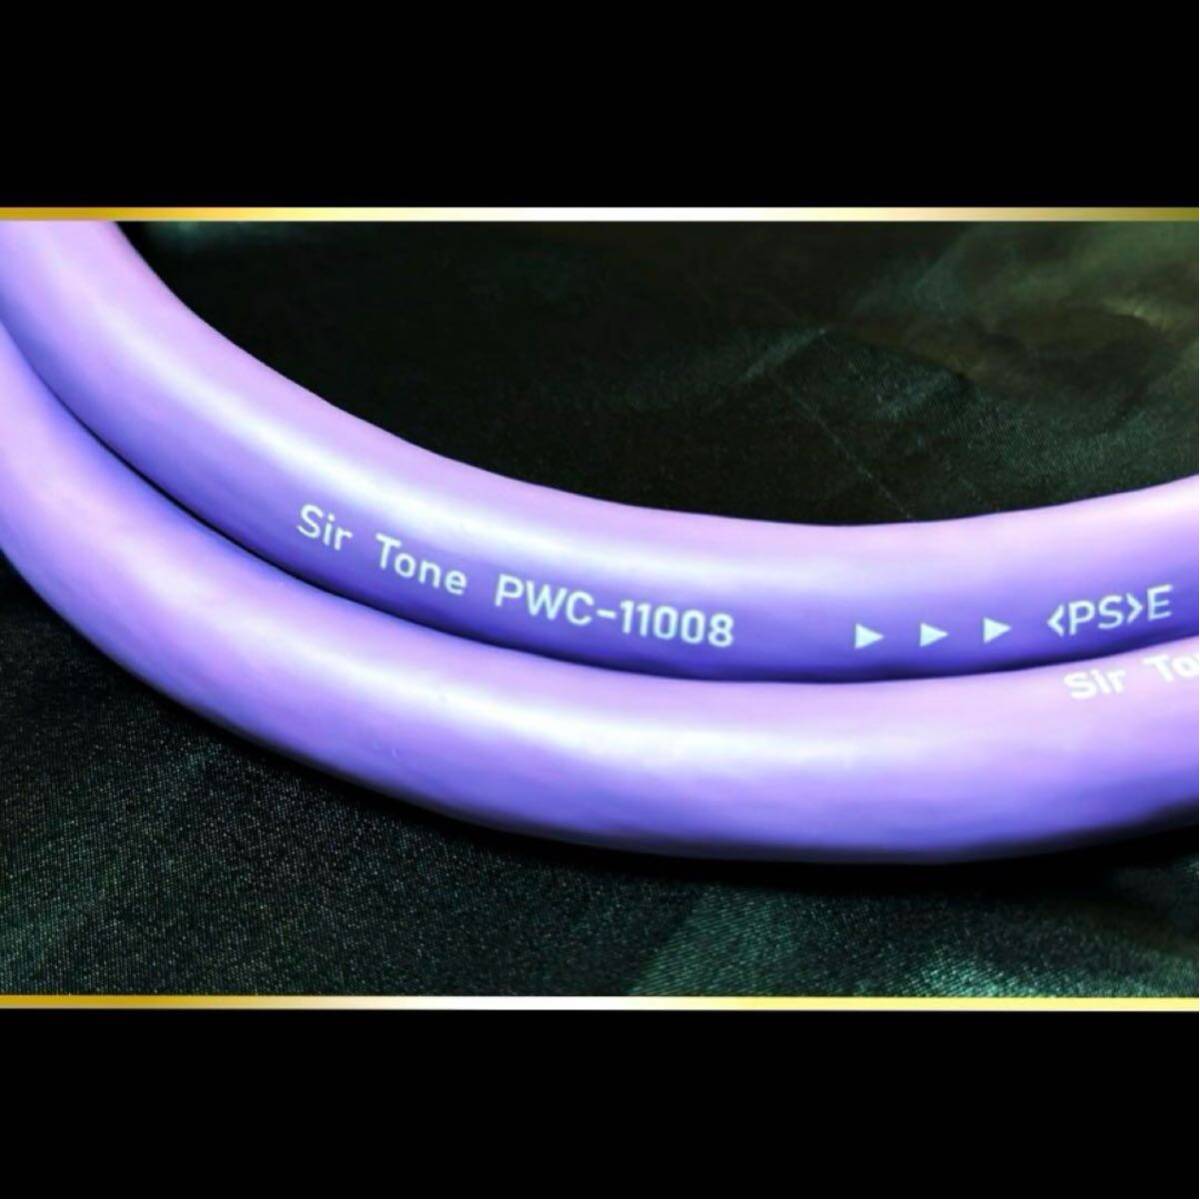 [SirTone]PWC-11008 3C ( защита модель ) электрический кабель примерно 80cm[ новый товар ]